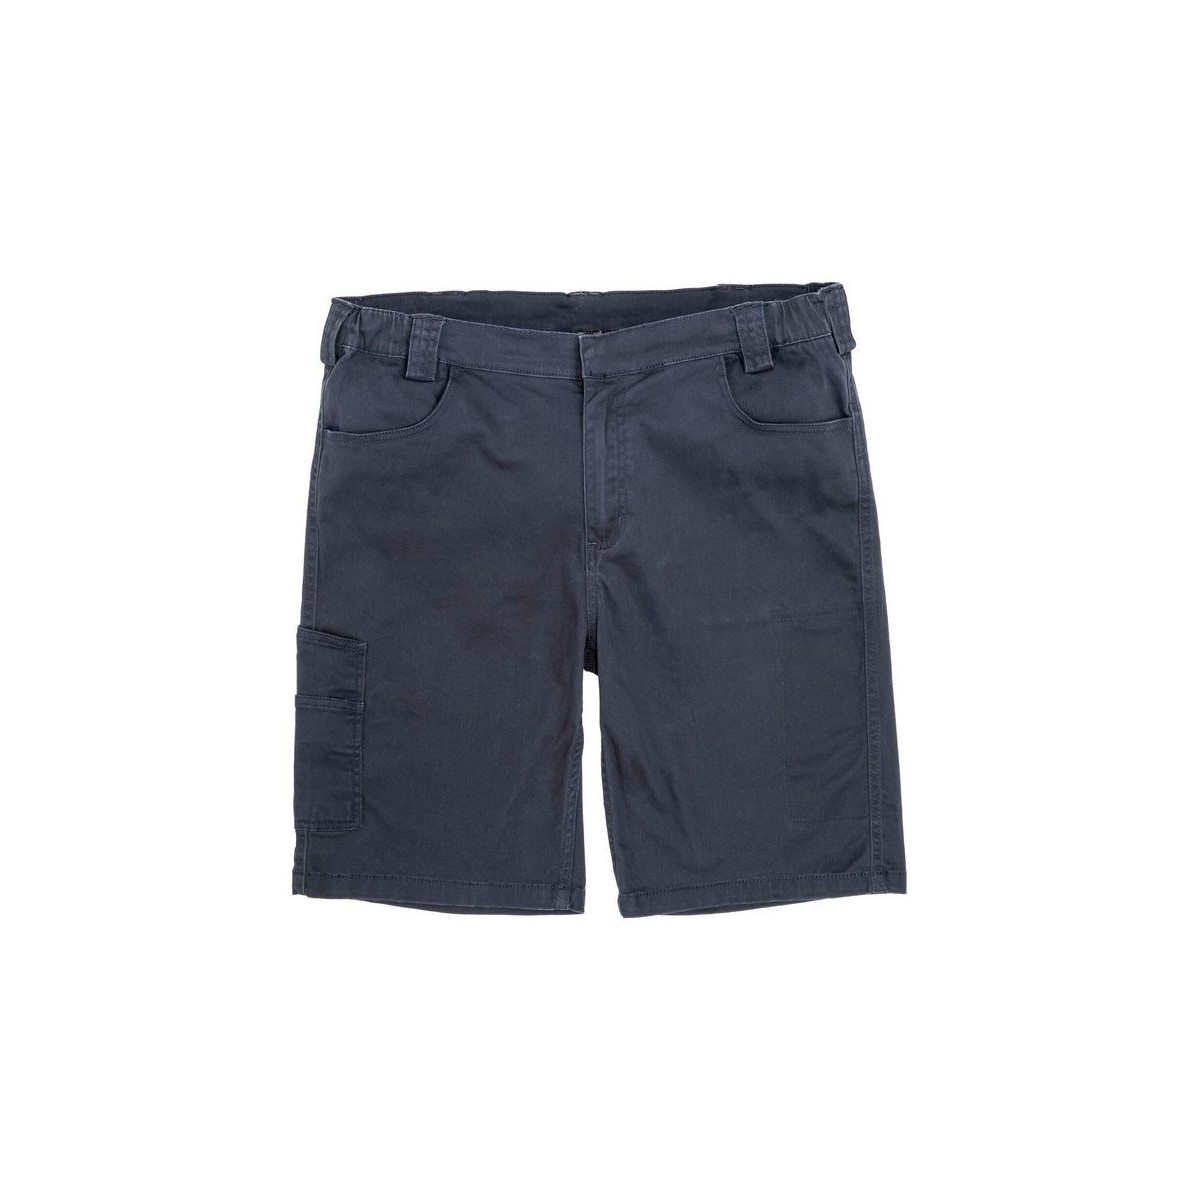 Vêtements Homme pumps Shorts / Bermudas Result R471X Bleu